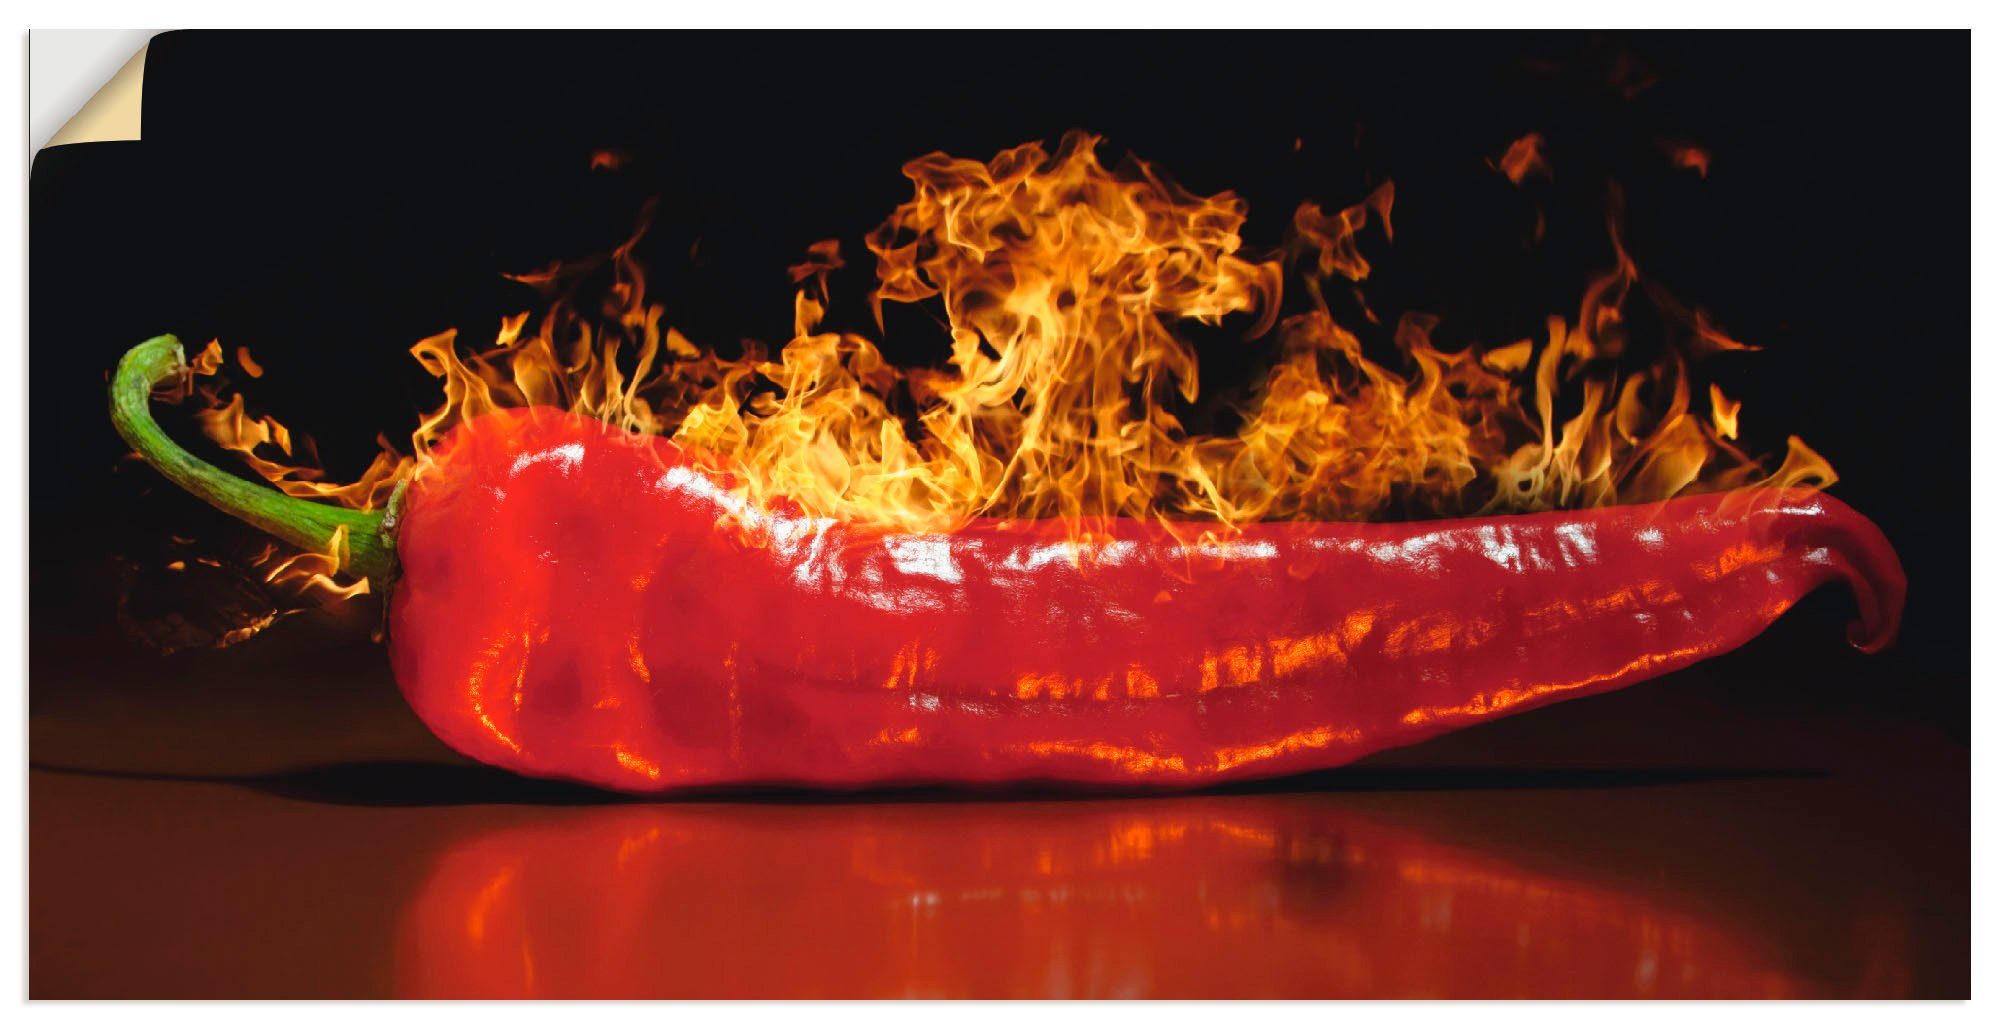 St), Artland scharfer Alubild, oder versch. Roter Wandbild Größen Lebensmittel Chilipfeffer, Leinwandbild, in Wandaufkleber als Poster (1